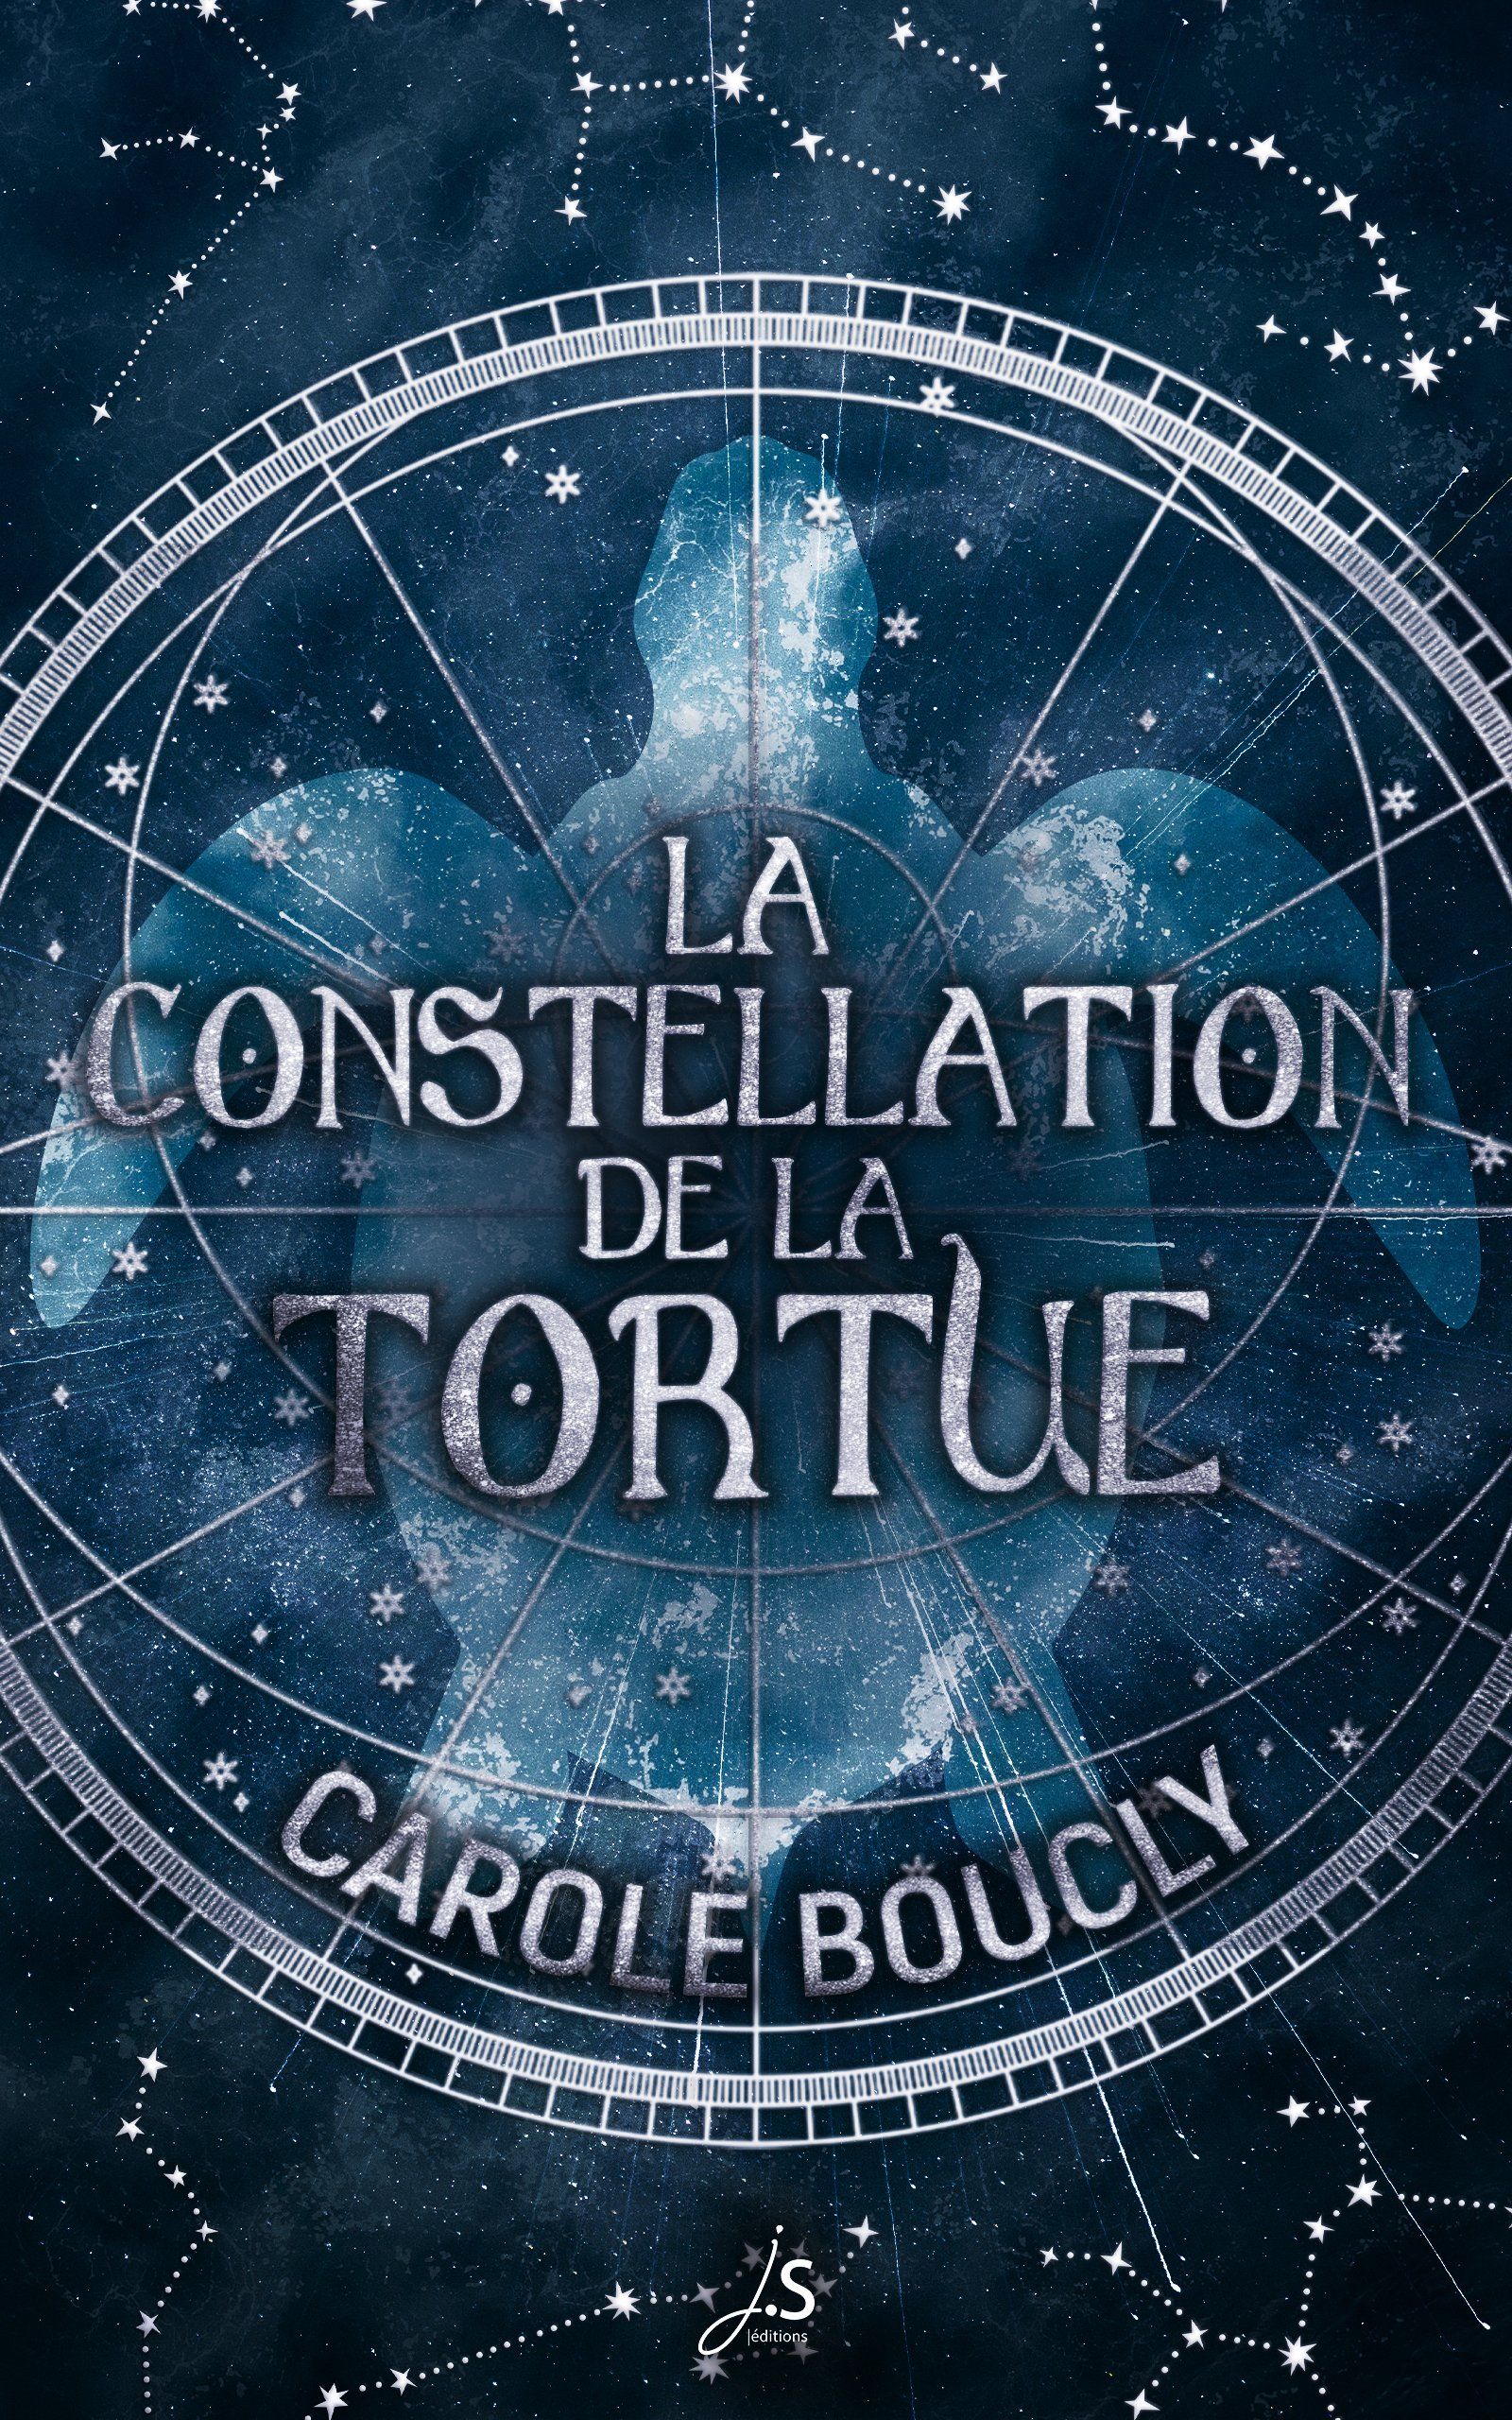 Couverture du roman de Carole Boucly La constellation de la tortue. Elle présente une carte du ciel et une silhouette de tortue de mer dans des tons bleus